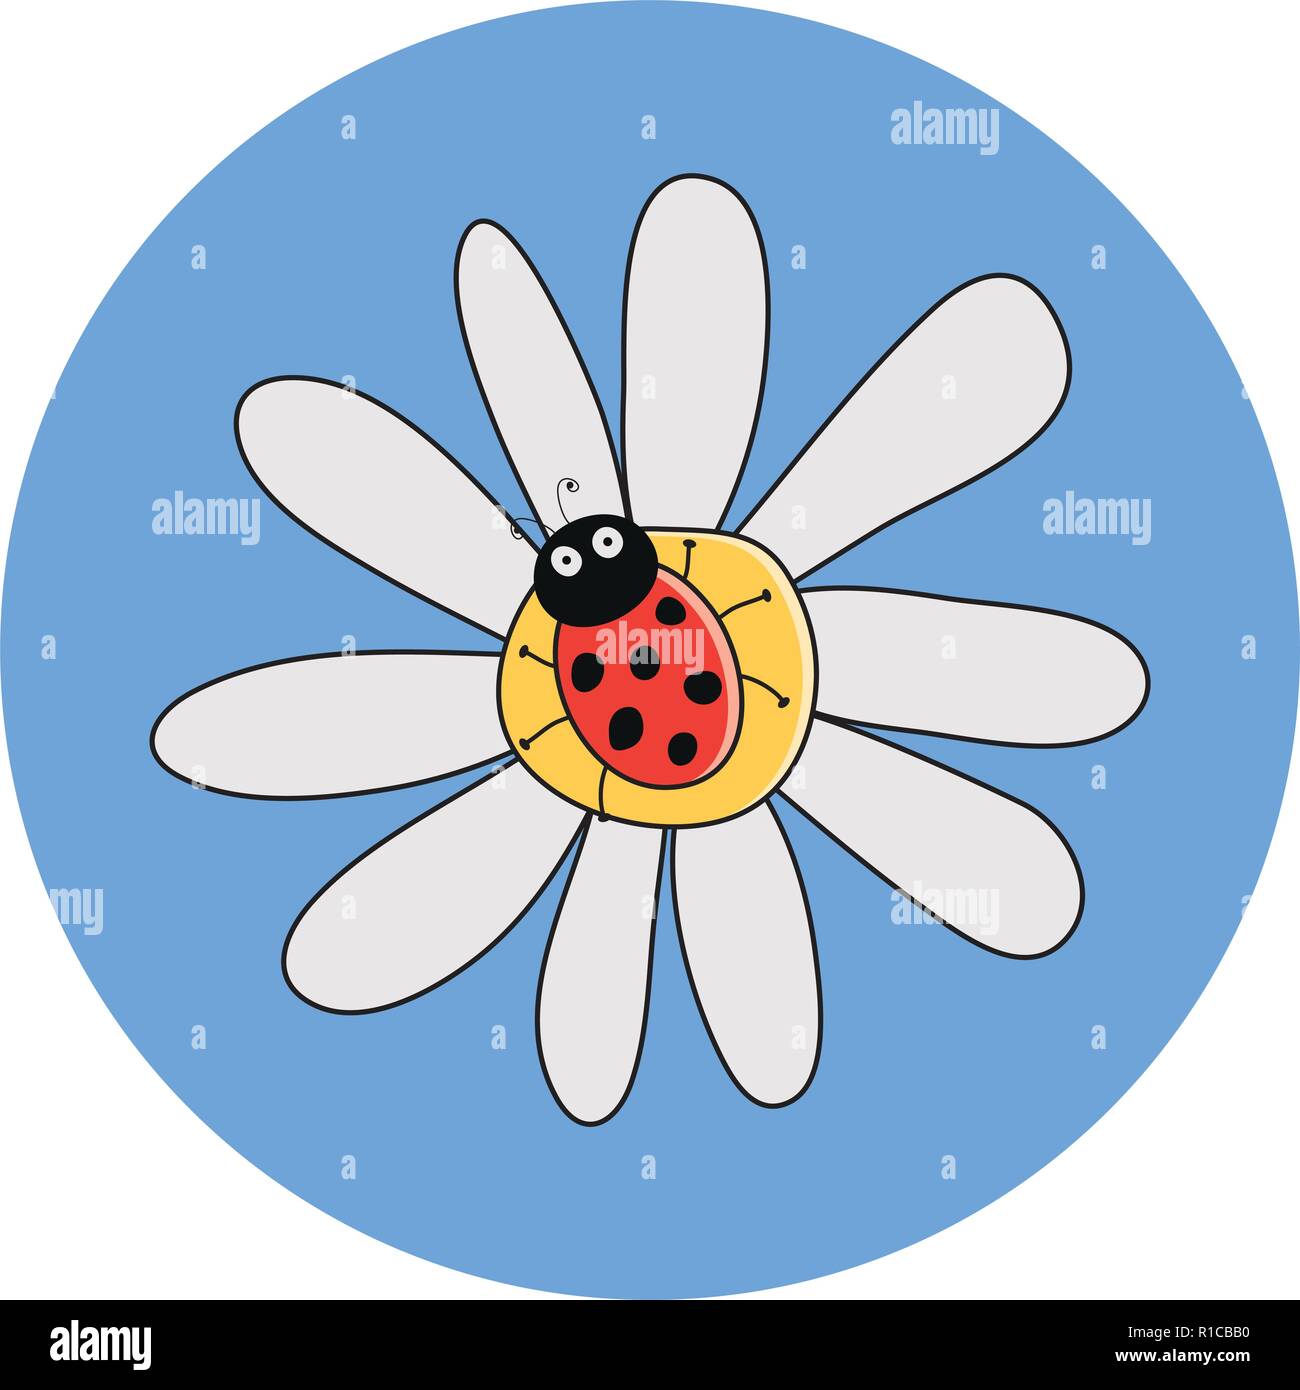 Vektor Zeichnung der rote Marienkäfer auf einem Kamille Blüte. Marienkäfer Cartoon auf daisy flower. hübsch gepunkteten Dame Bug Sommer Abbildung Stock Vektor